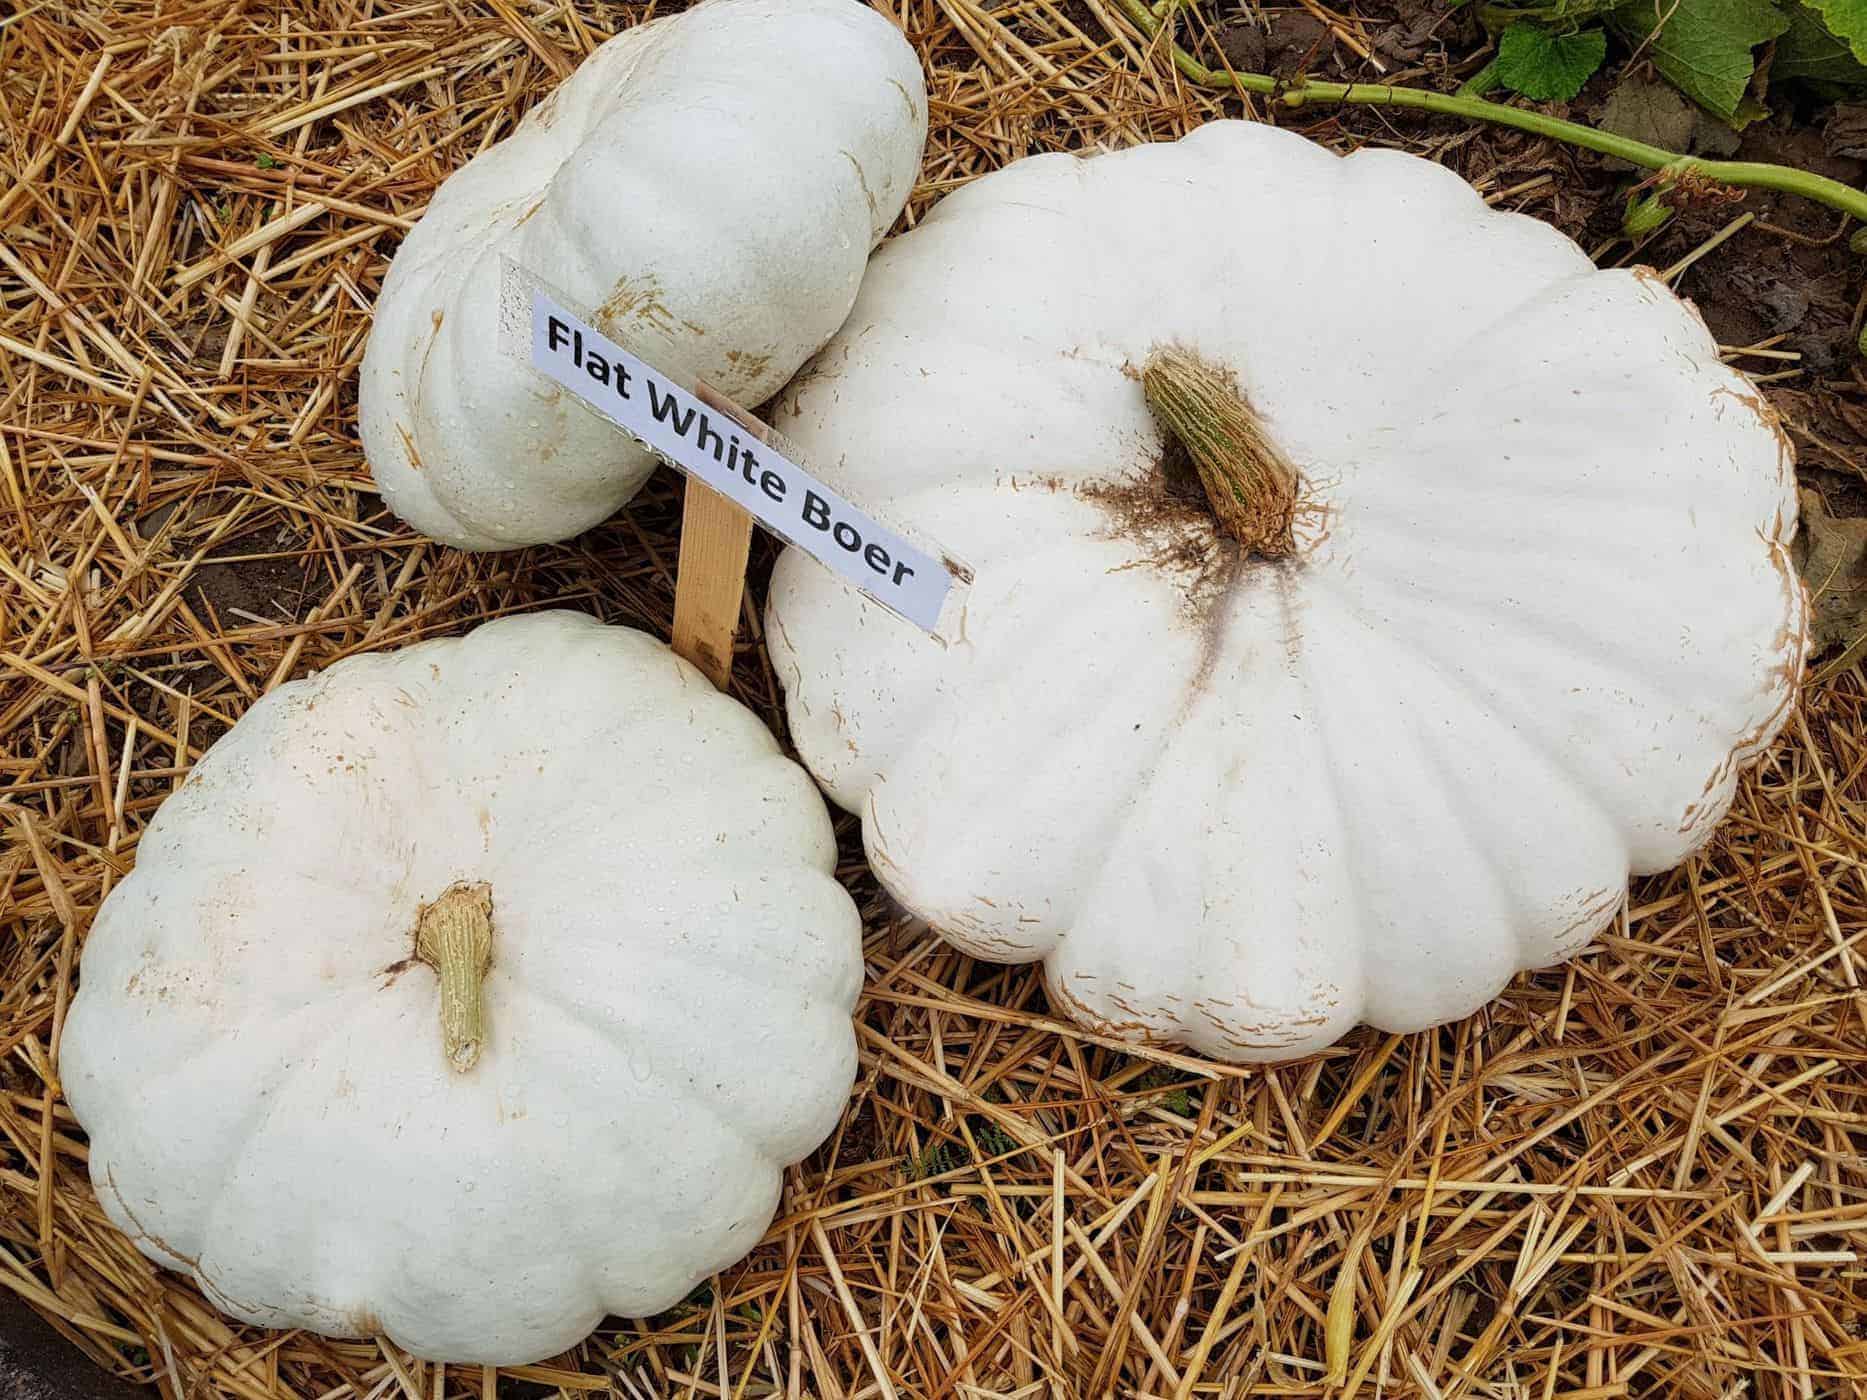 Flat white boer pumpkins